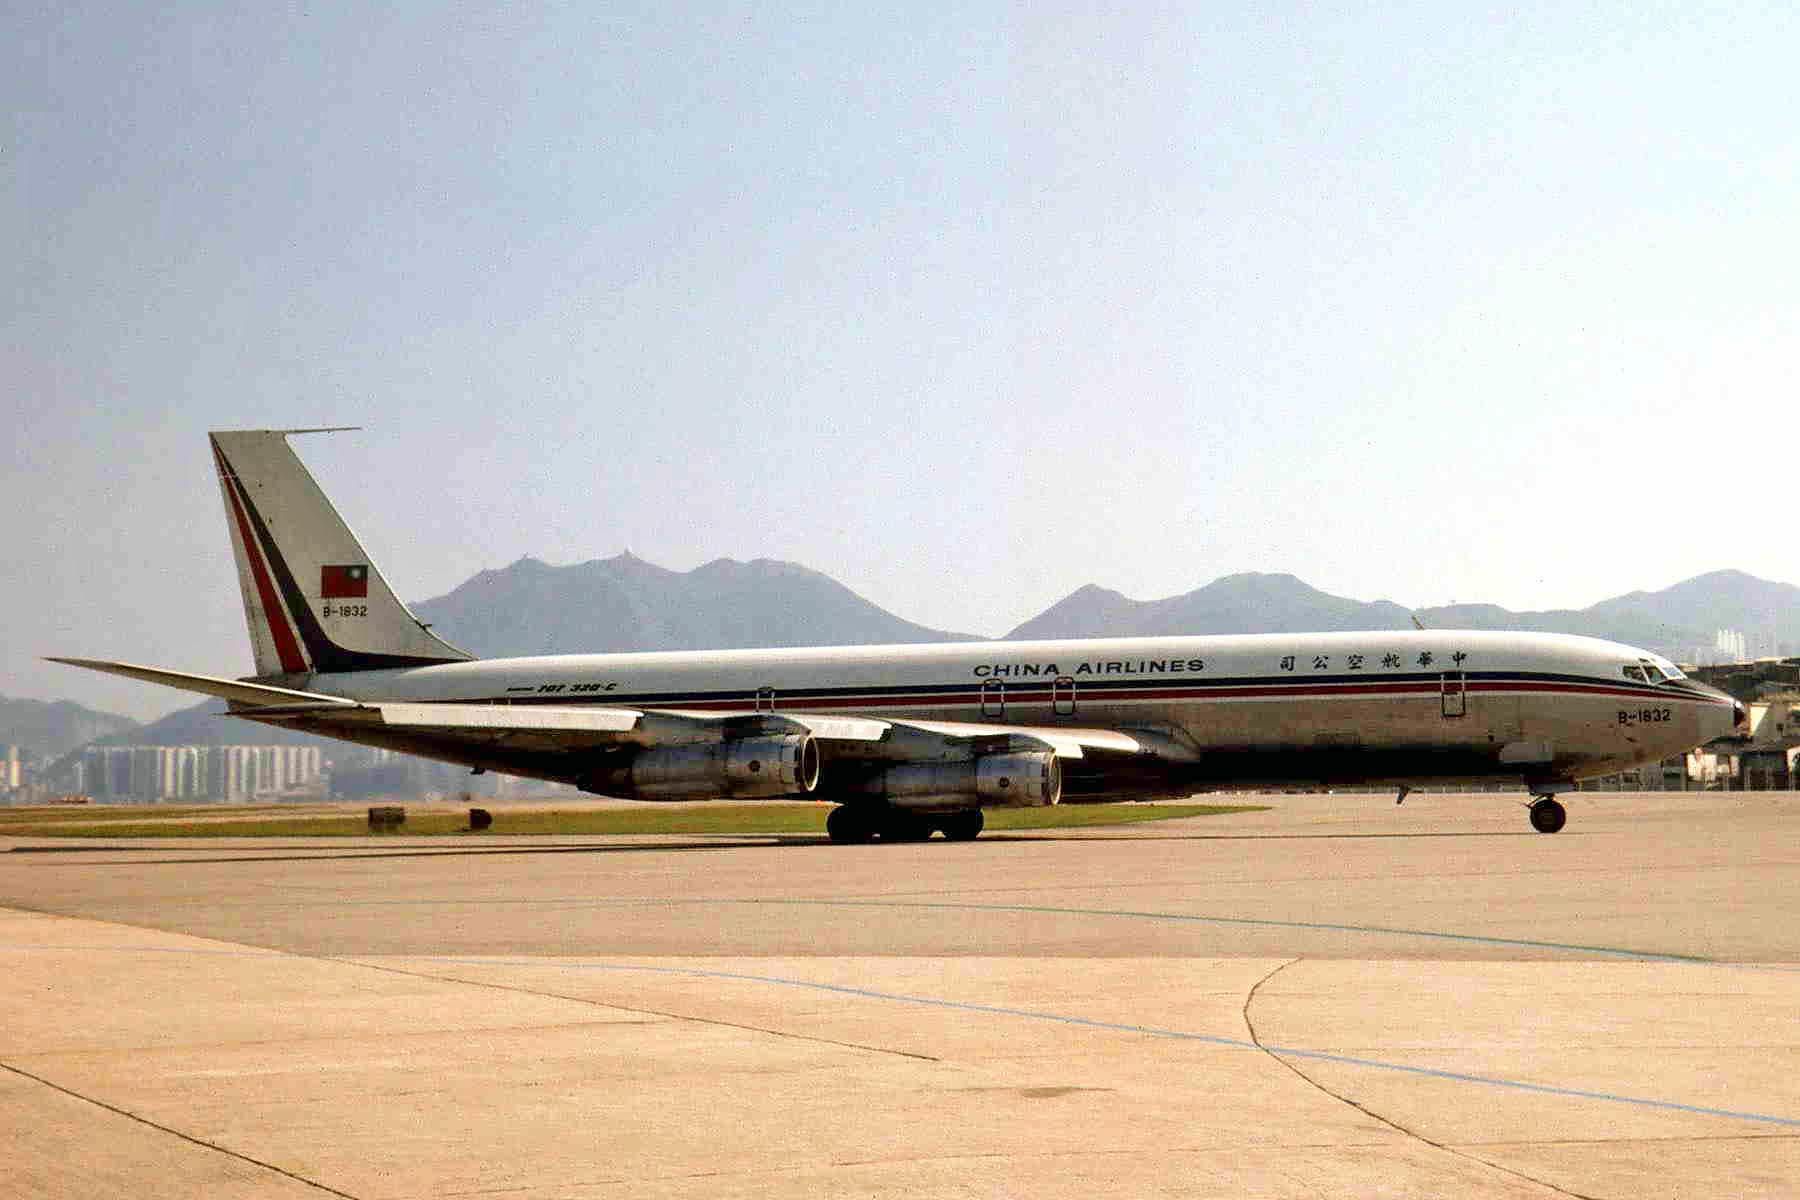 A China Airlines Boeing 707 at Hong Kong Airport.